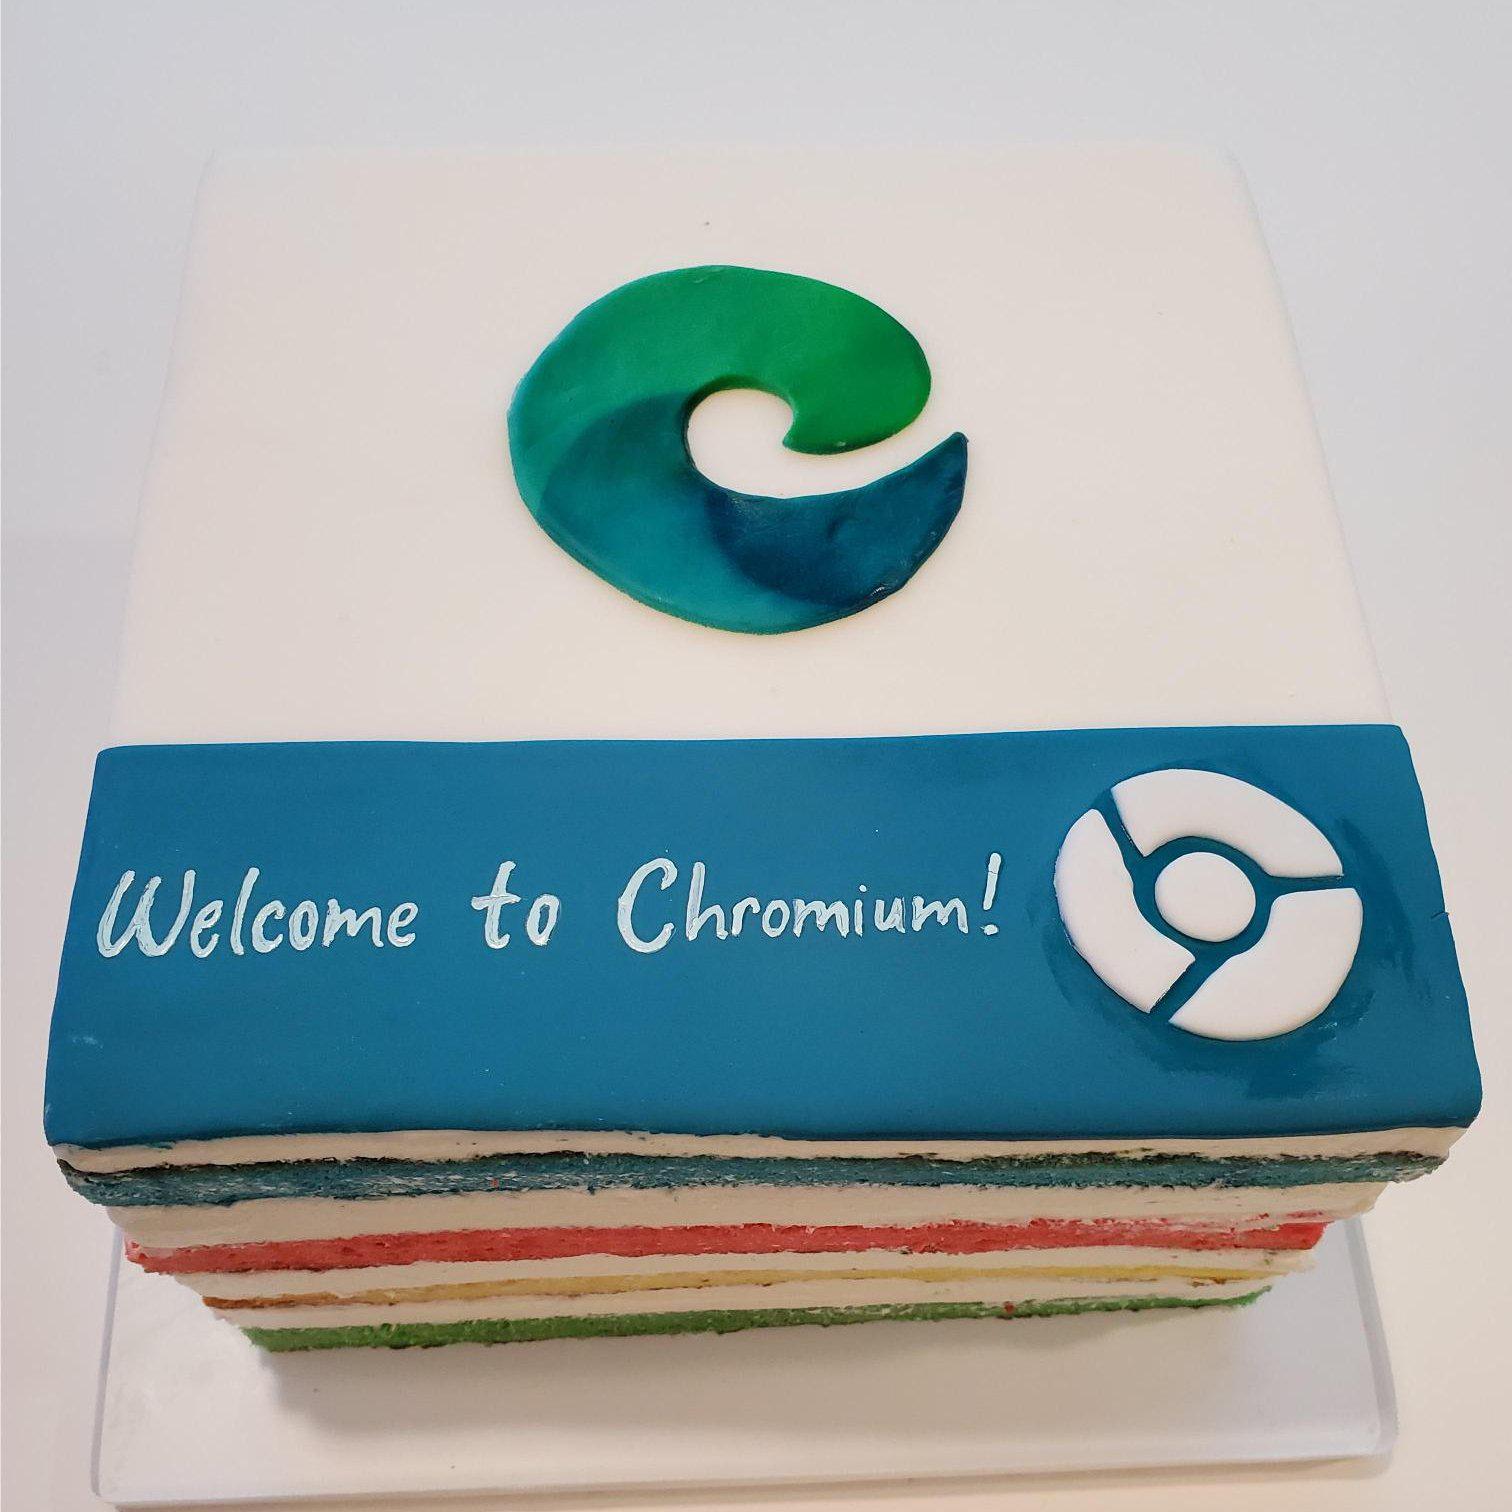 Gâteau envoyé par Google à Microsoft pour la sortie de la version d’Edge basée sur Chromium